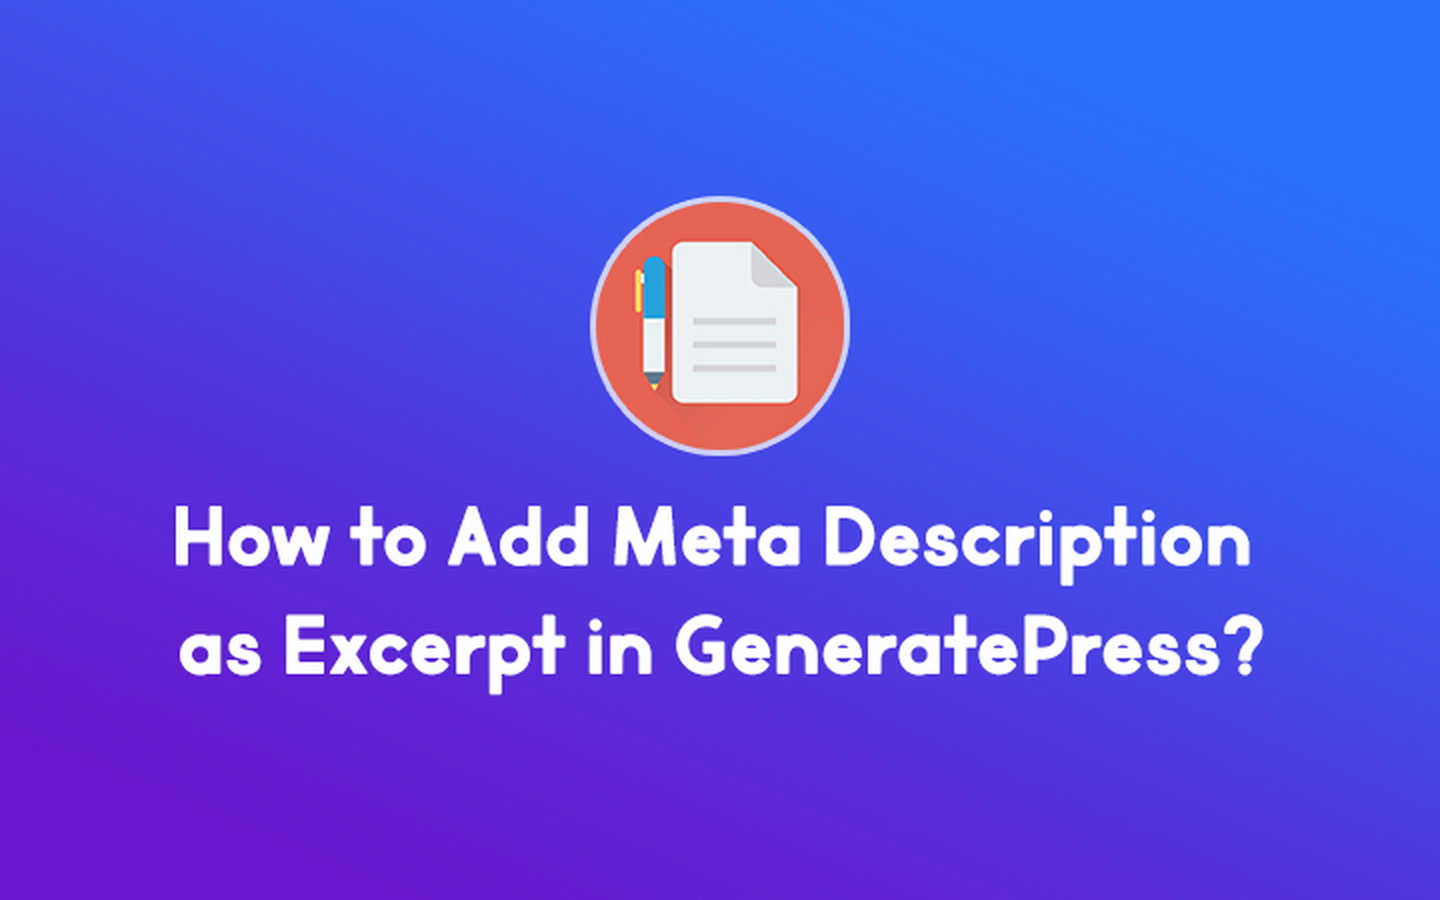 Tambahkan Meta Description sebagai Kutipan di GeneratePress